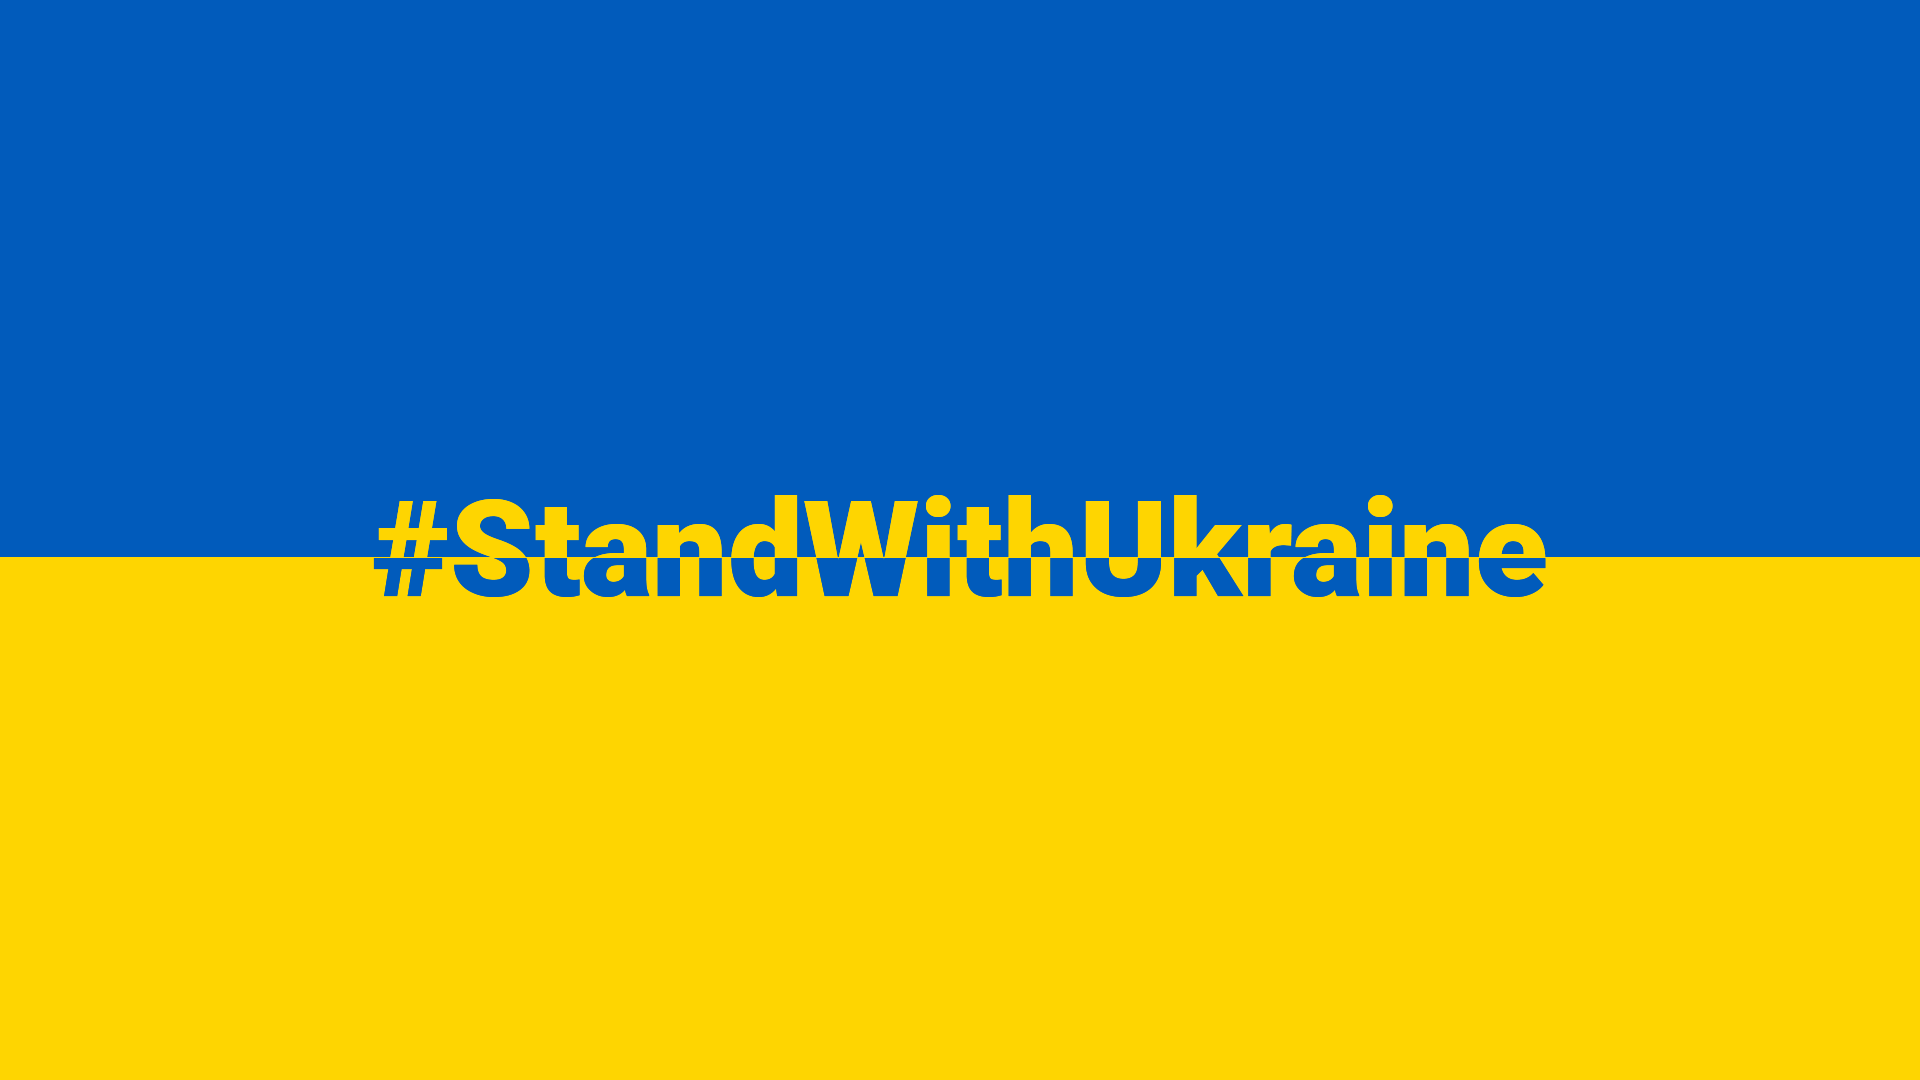 Stand With Ukraine - cosch.design solidarisiert sich